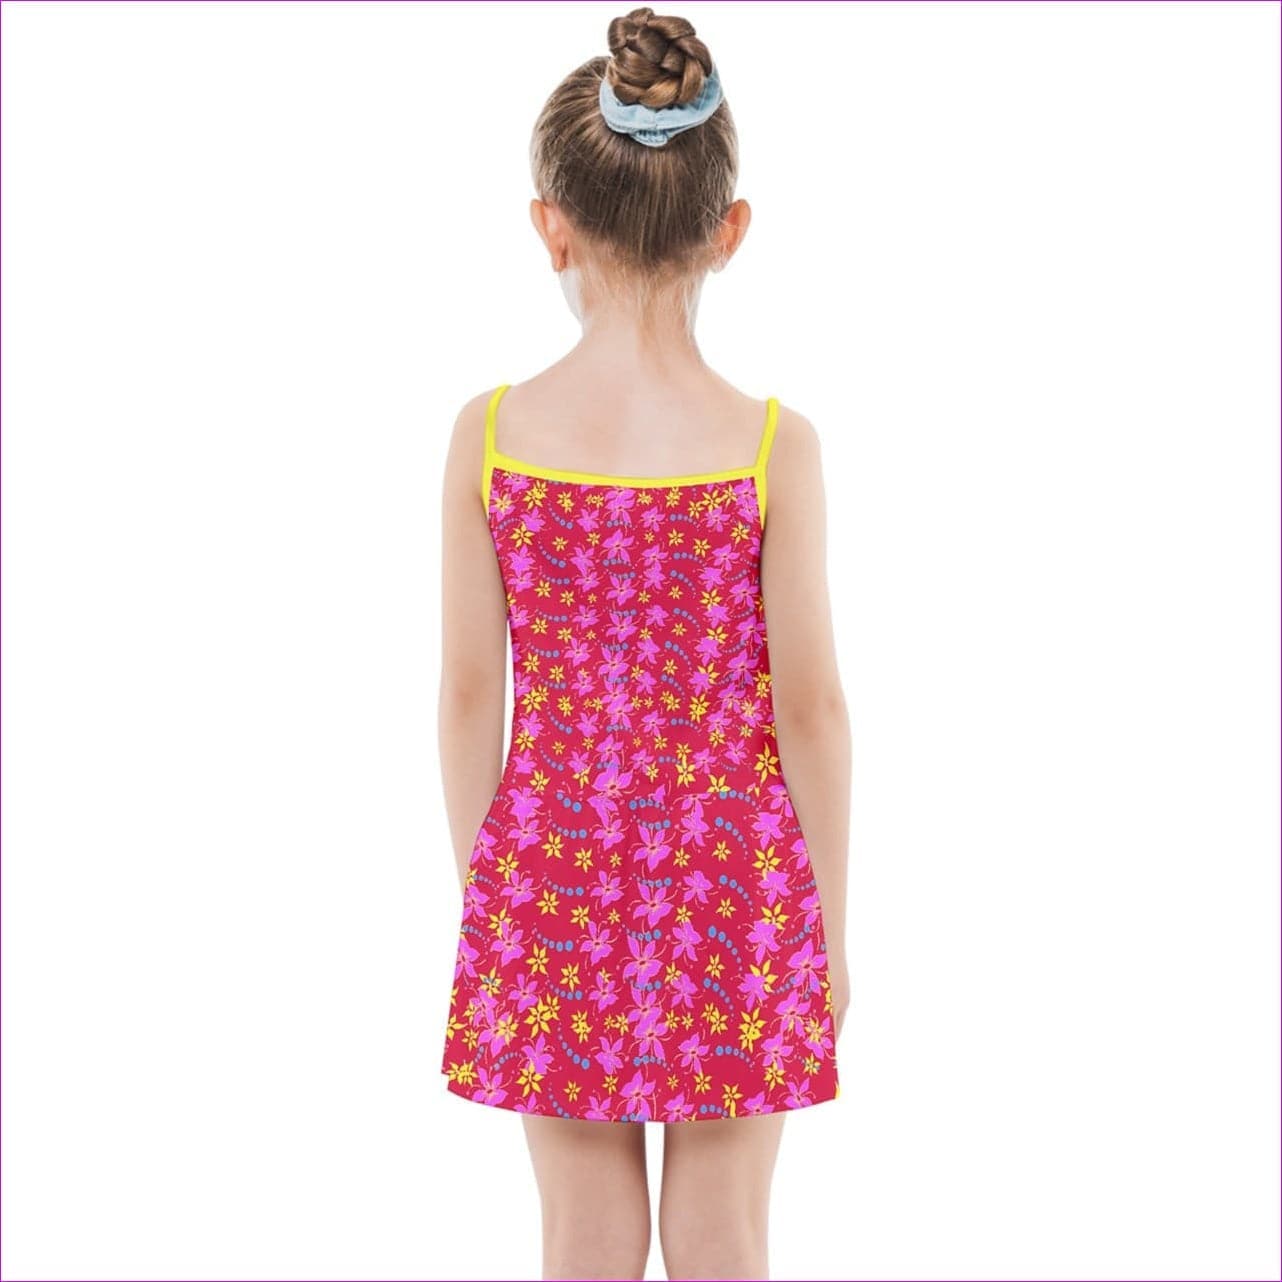 - Floral Wear Kids Girls Summer Sun Dress - kids dress at TFC&H Co.